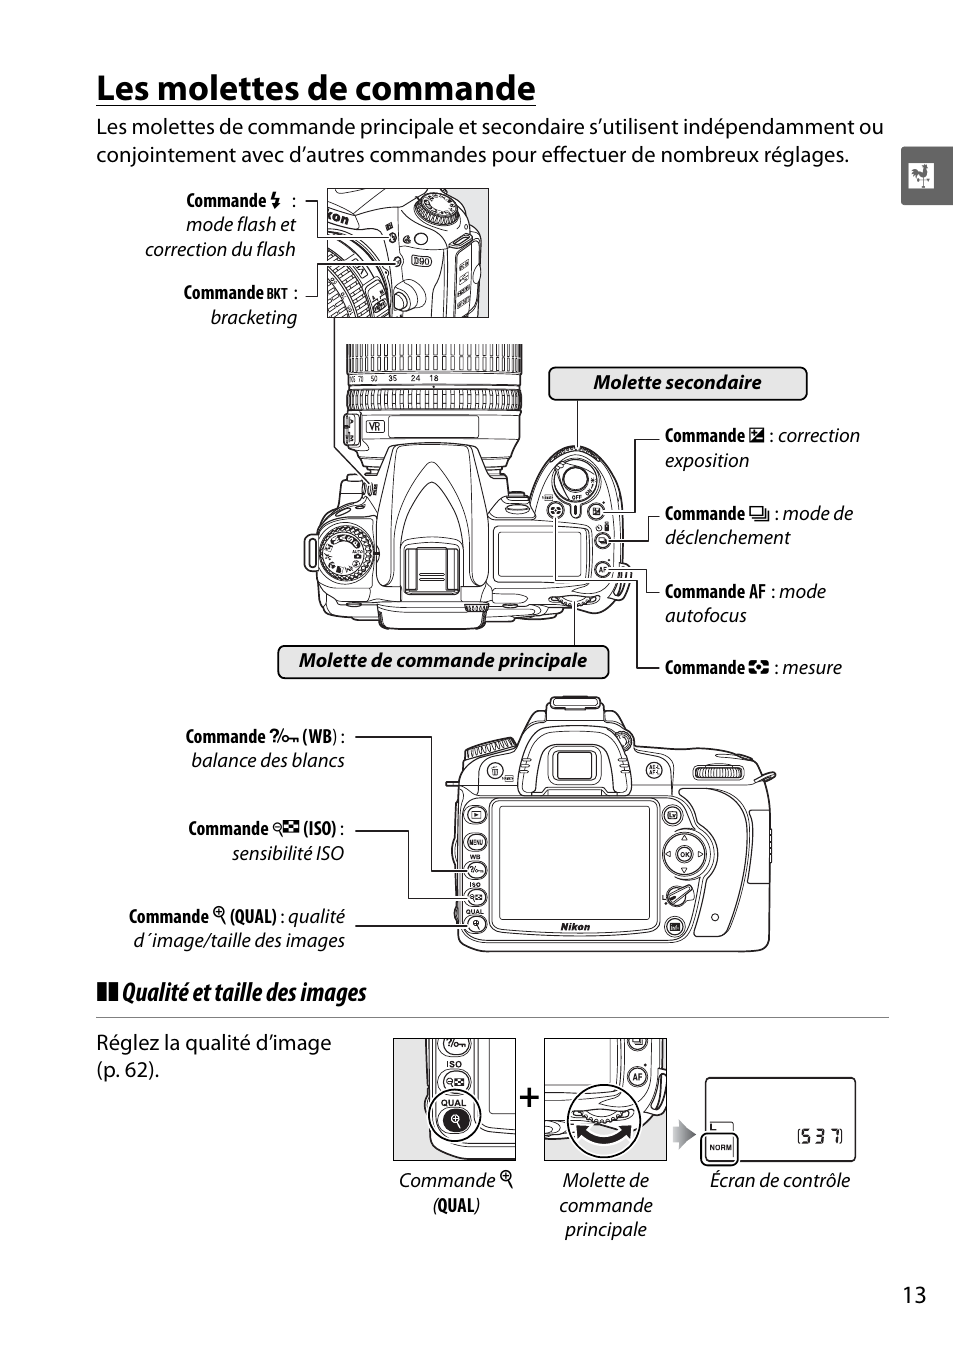 Les molettes de commande, Qualité et taille des images | Nikon D90 Manuel d'utilisation | Page 33 / 300